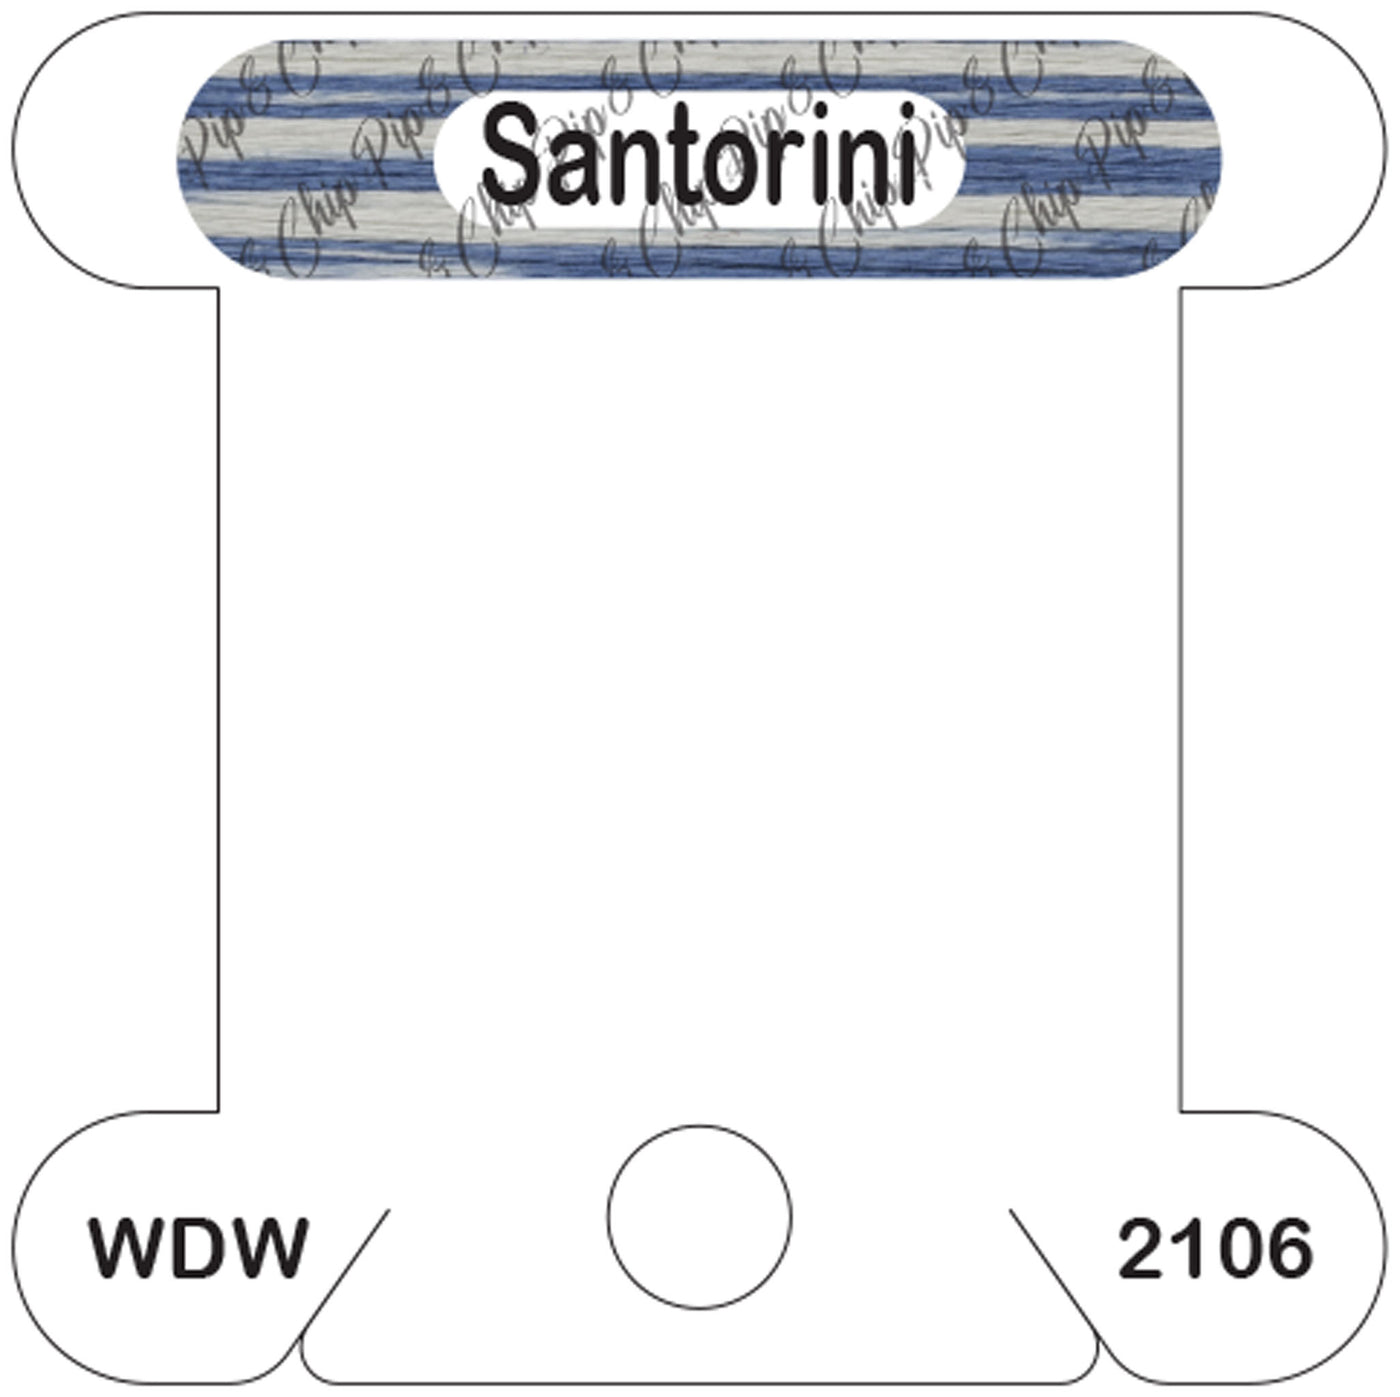 WDW Santorini acrylic bobbin